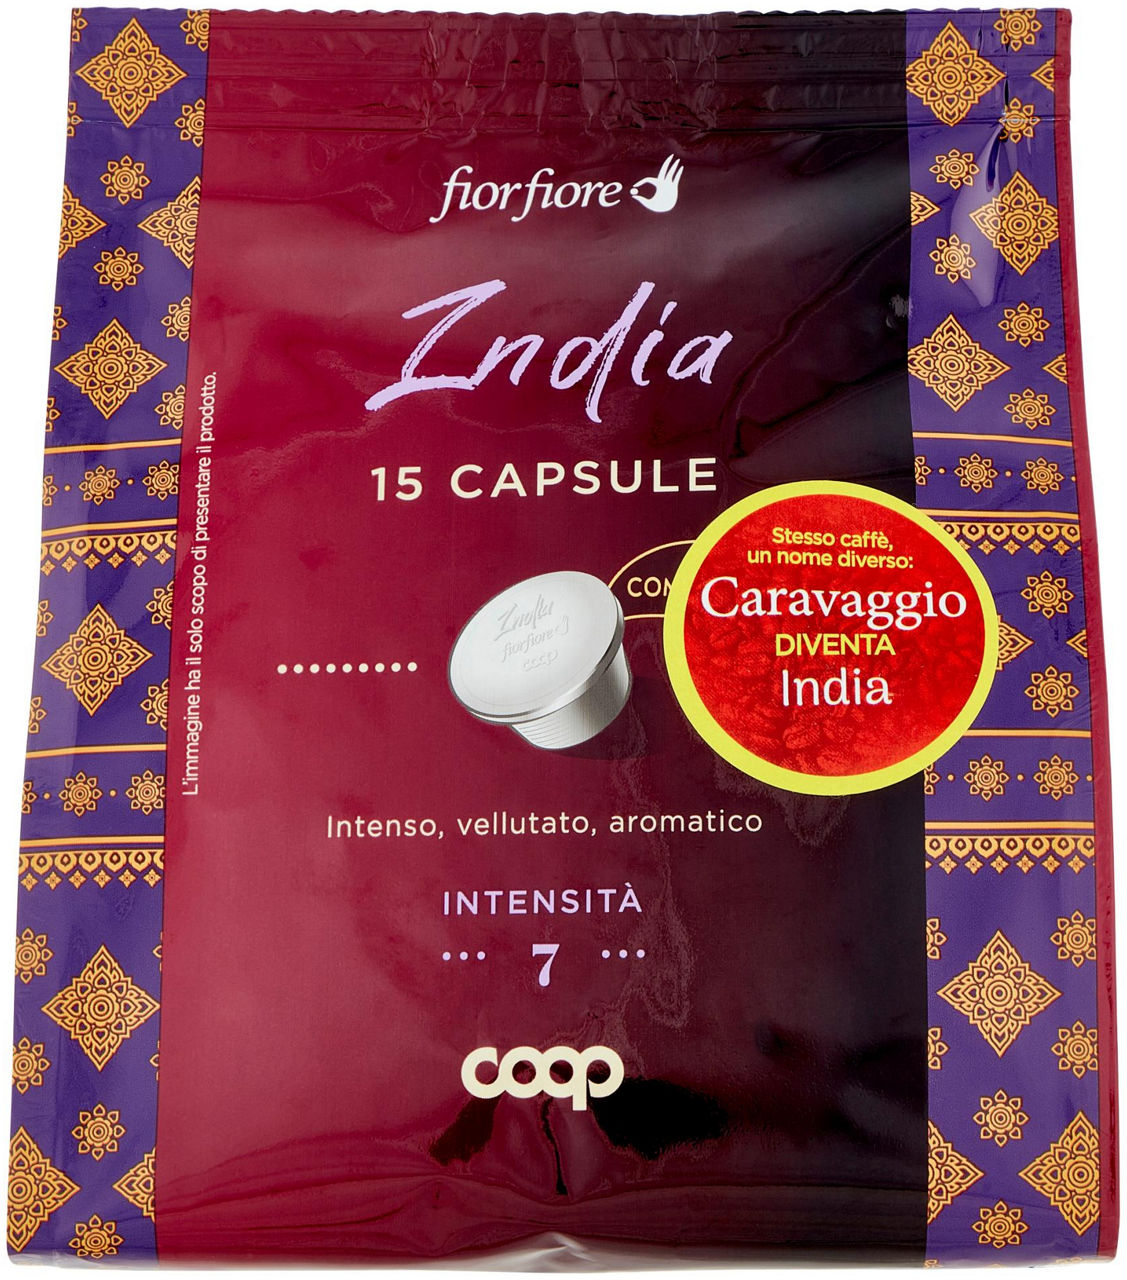 Caffe' india in capsule compostabili "caravaggio" fior fiore coop pz15 g 95